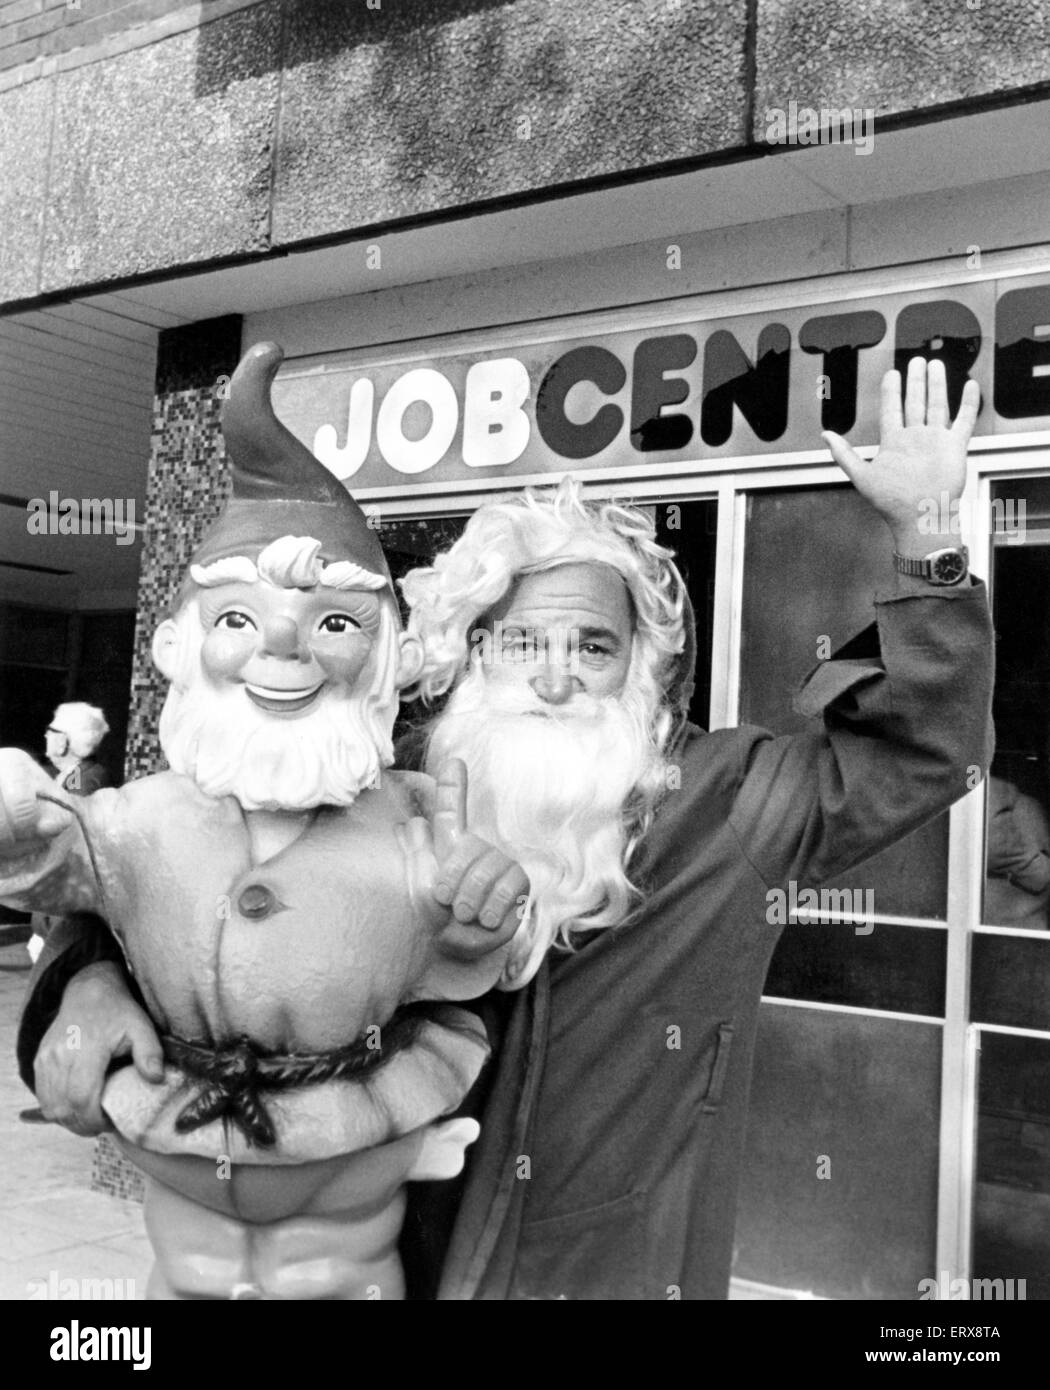 Jolly job hunter Ken Ellis trovato un Natale in anticipo presente in attesa per lui nelle situazioni vacante in colonna, egli sta per essere un negozio di Stockton santa claus, 26 ottobre 1982. Foto Stock